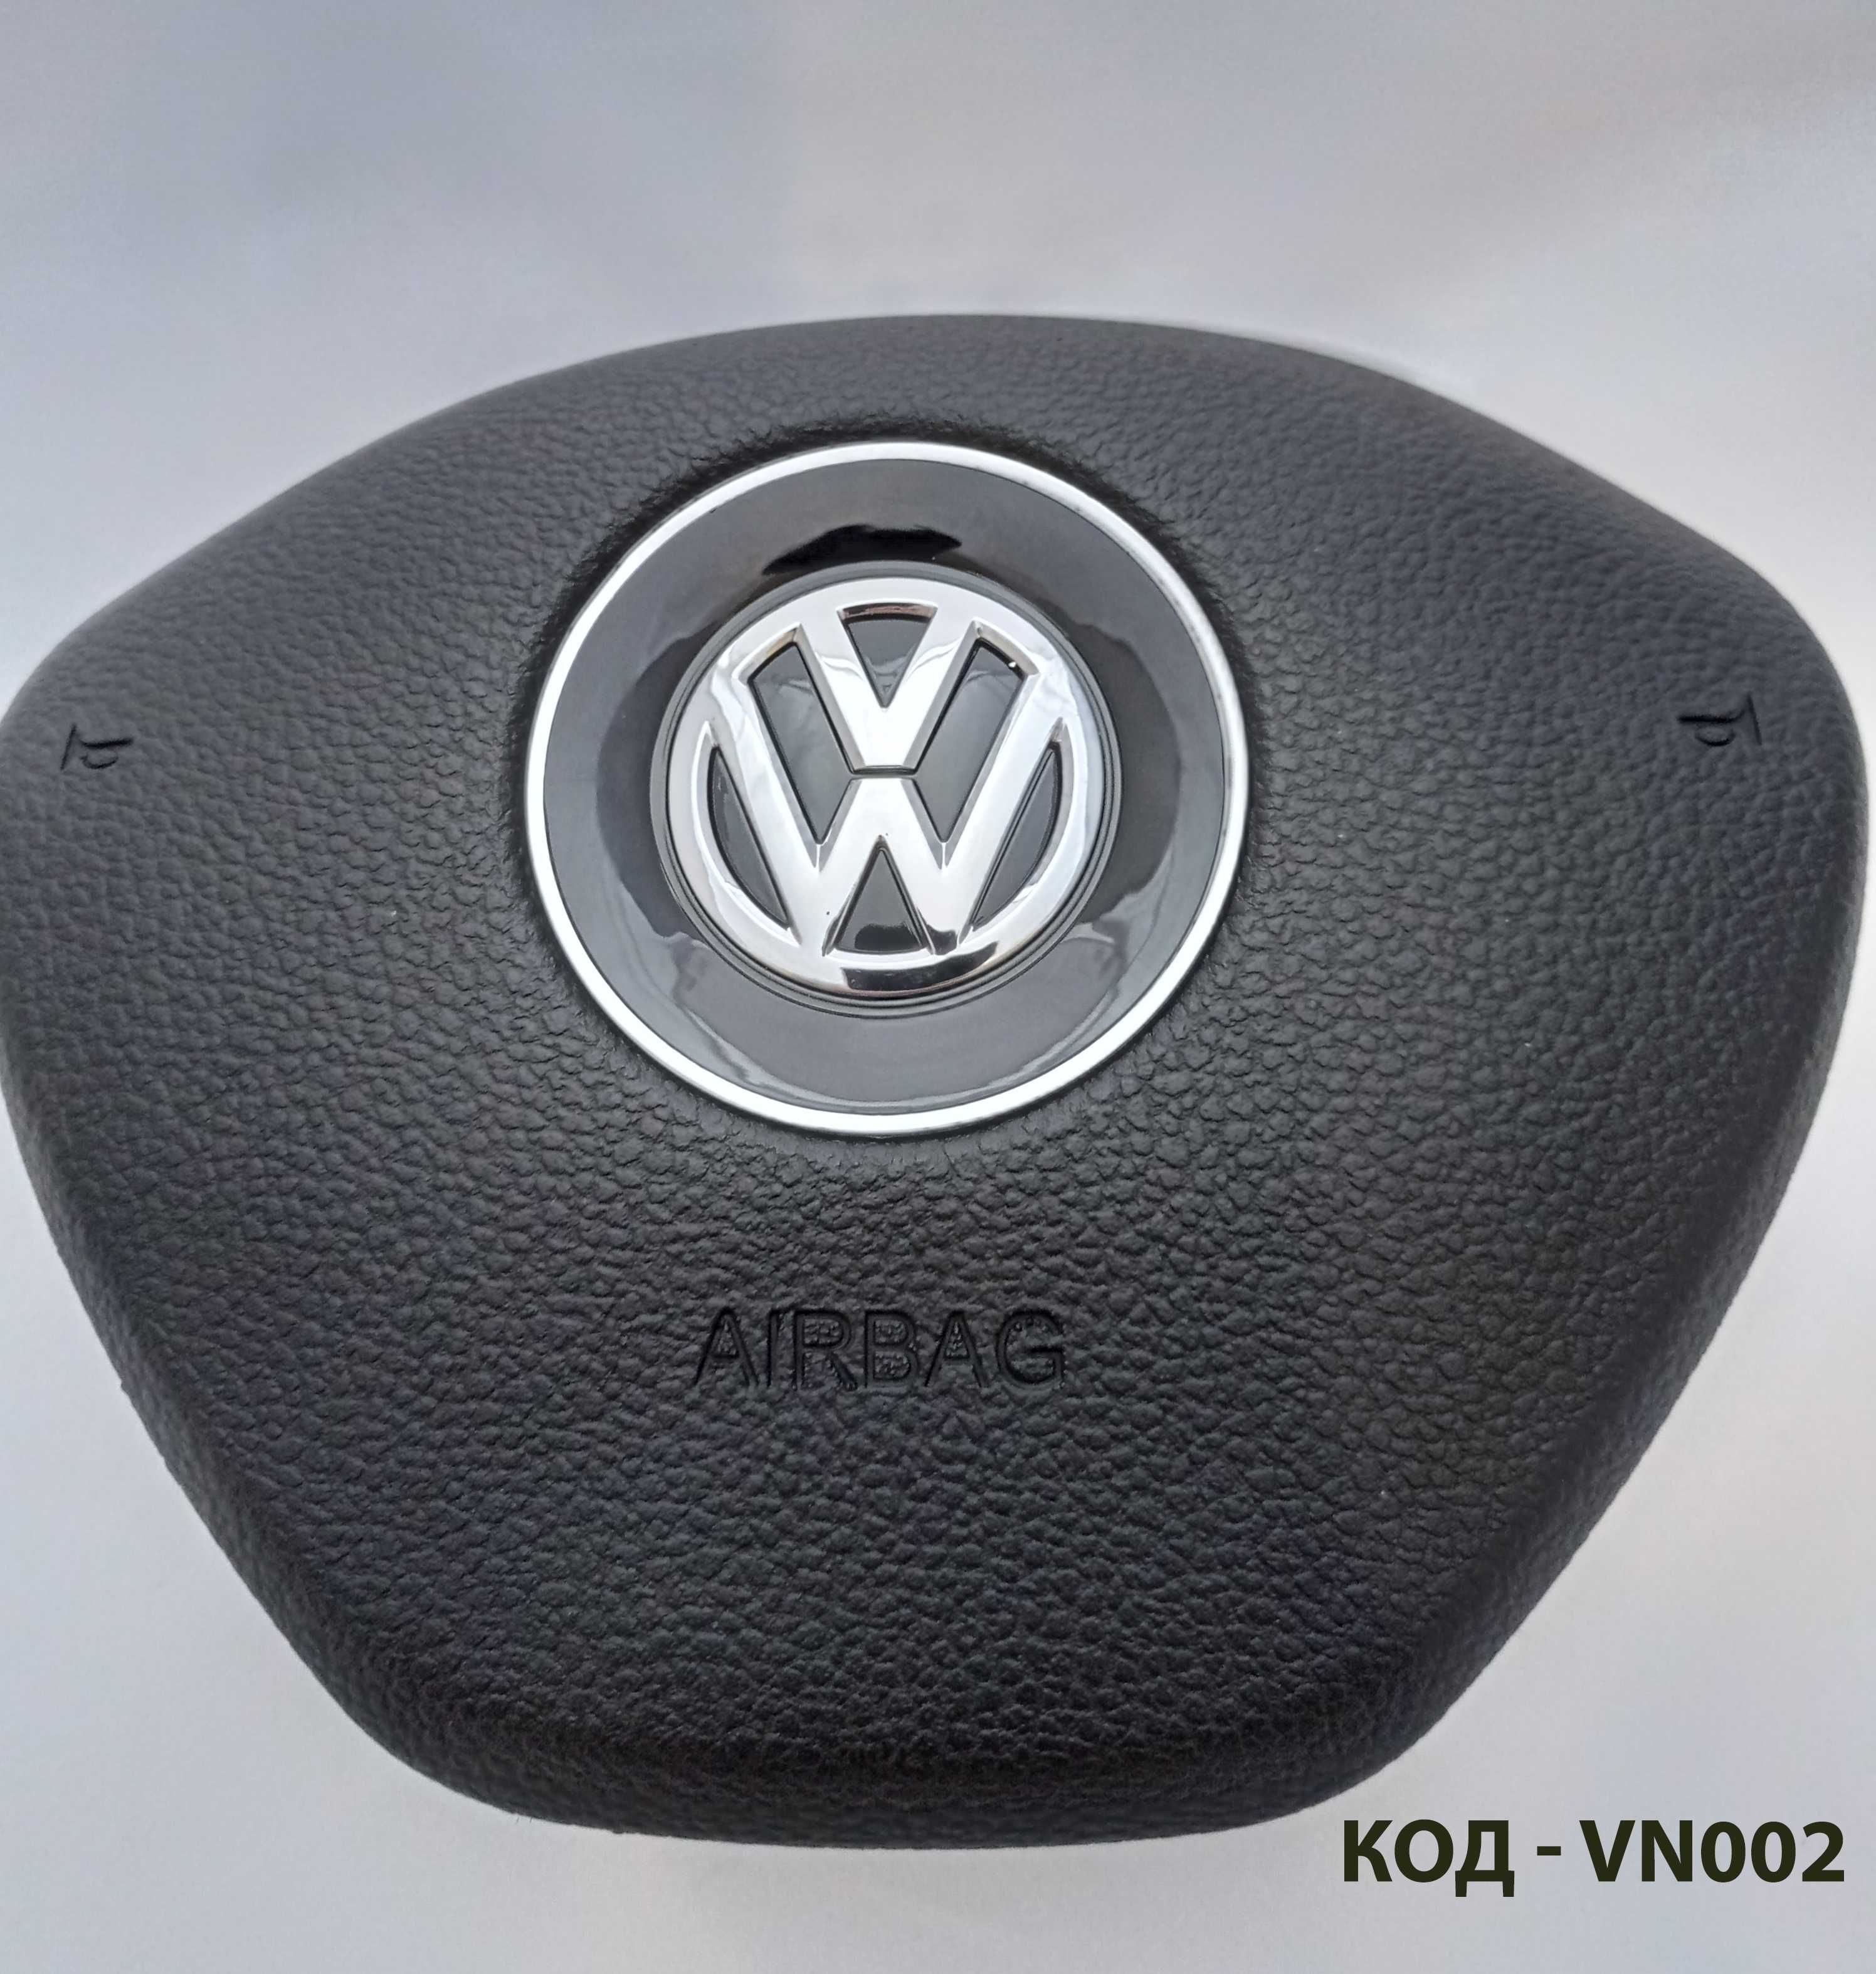 Кришки в руль заглушки накладка обманка AirBag VW